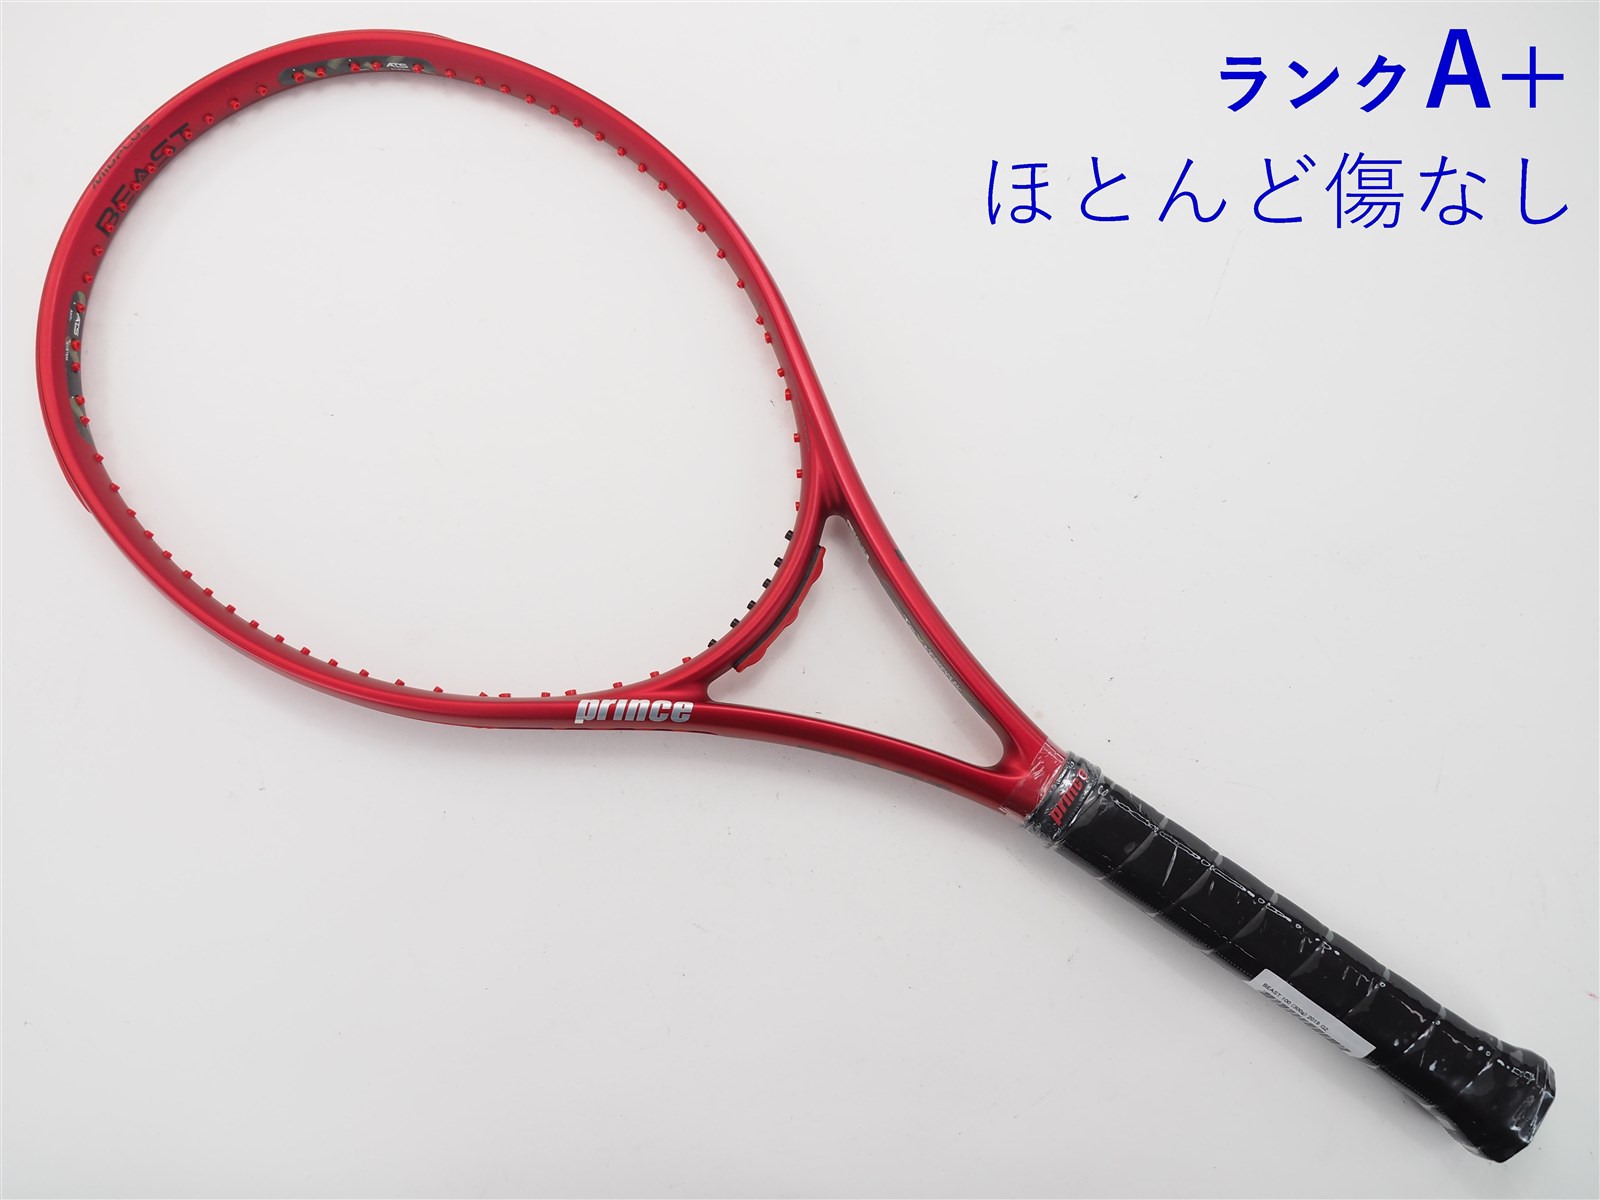 プリンス HARRIER104 XR-J 硬式テニス ラケット - ラケット(硬式用)